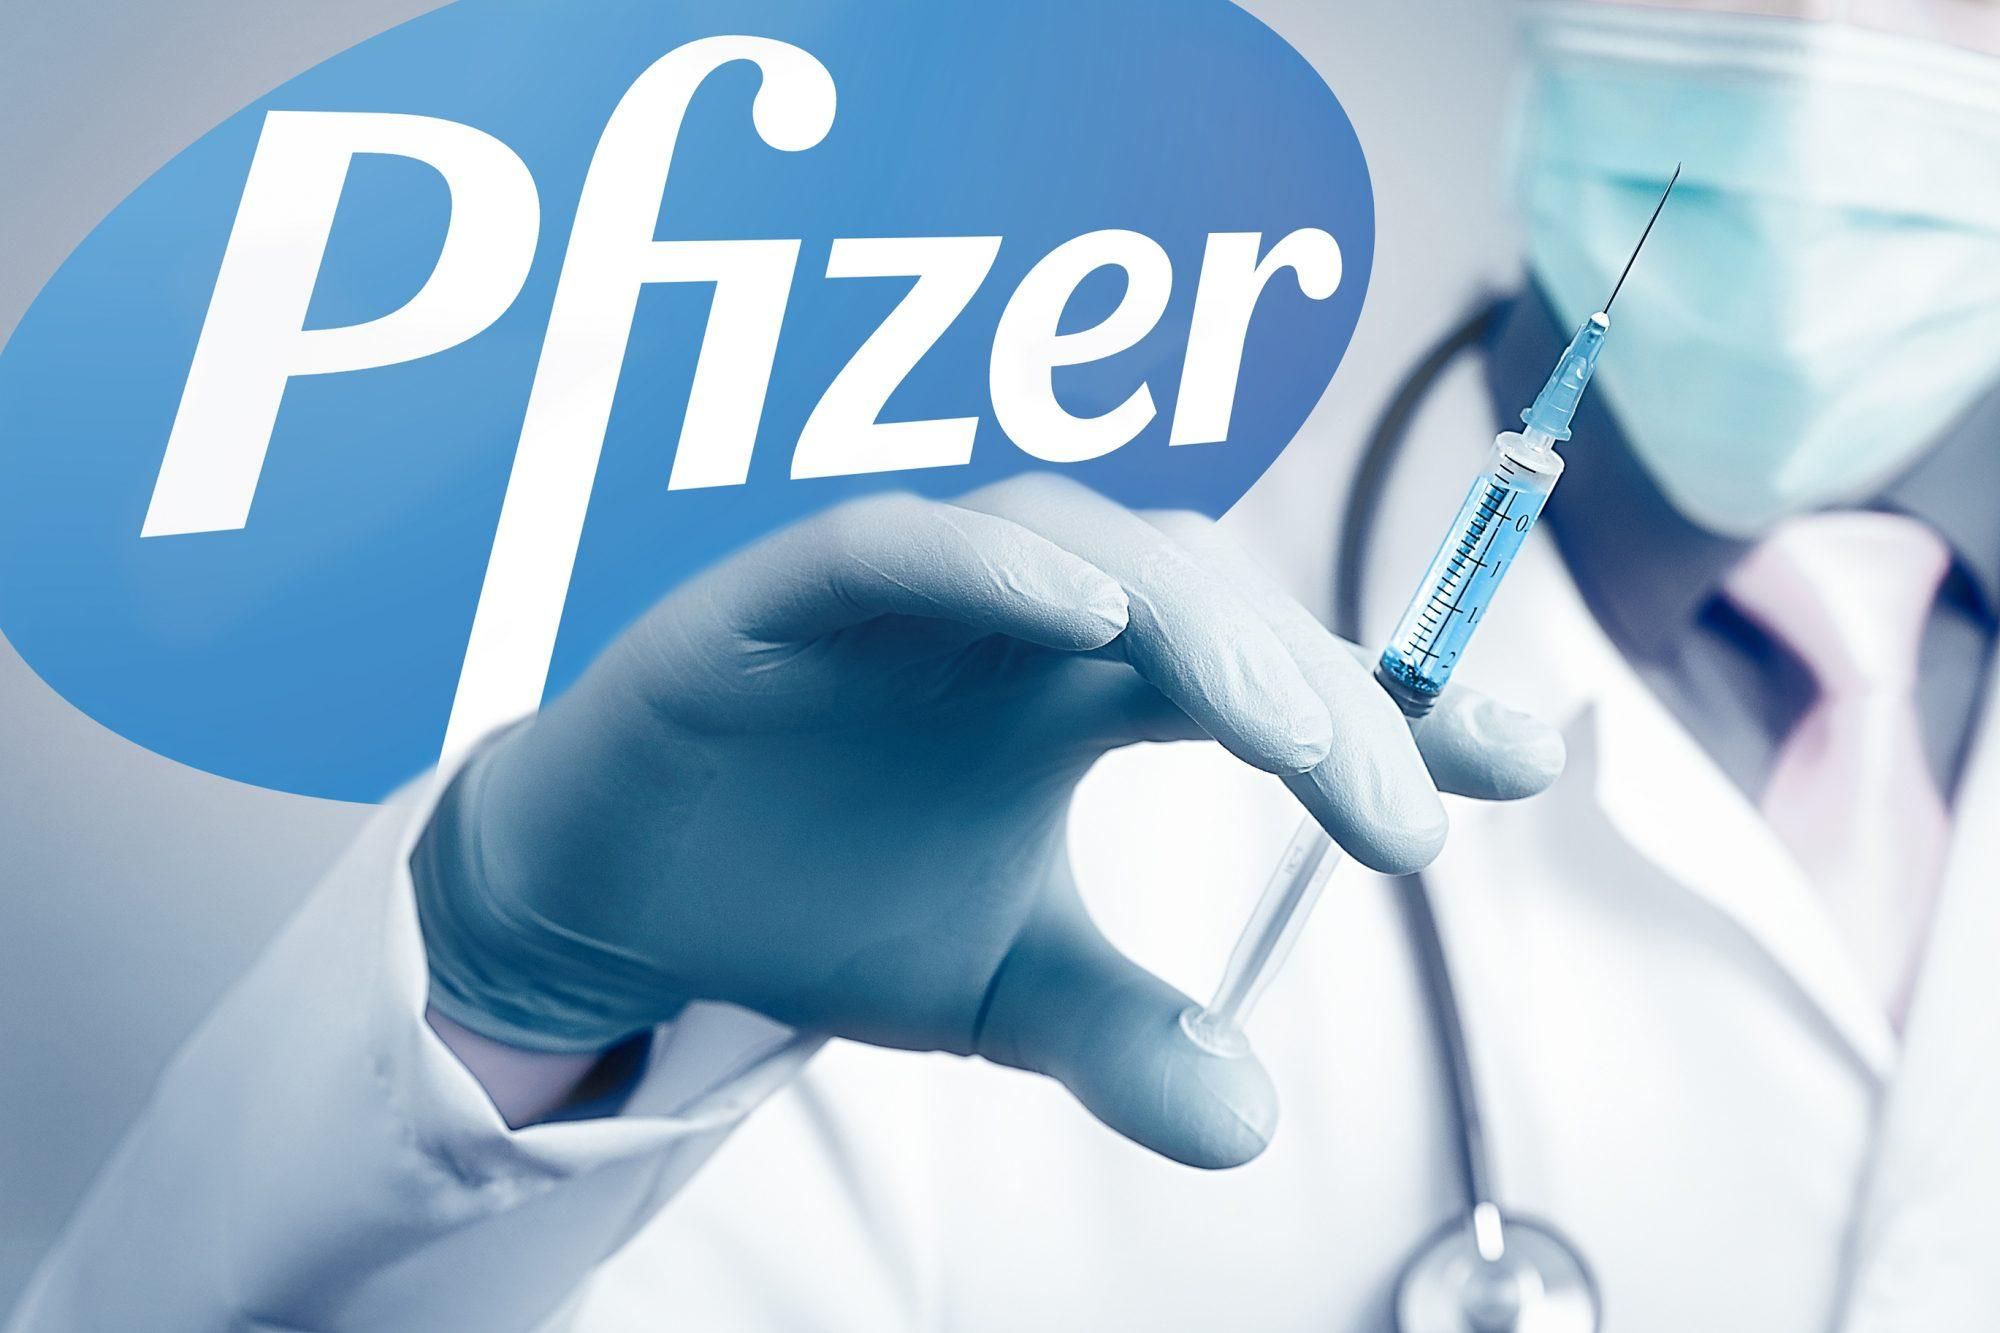 Україна уклала договір з Pfizer на поставку 10 мільйонів доз вакцини